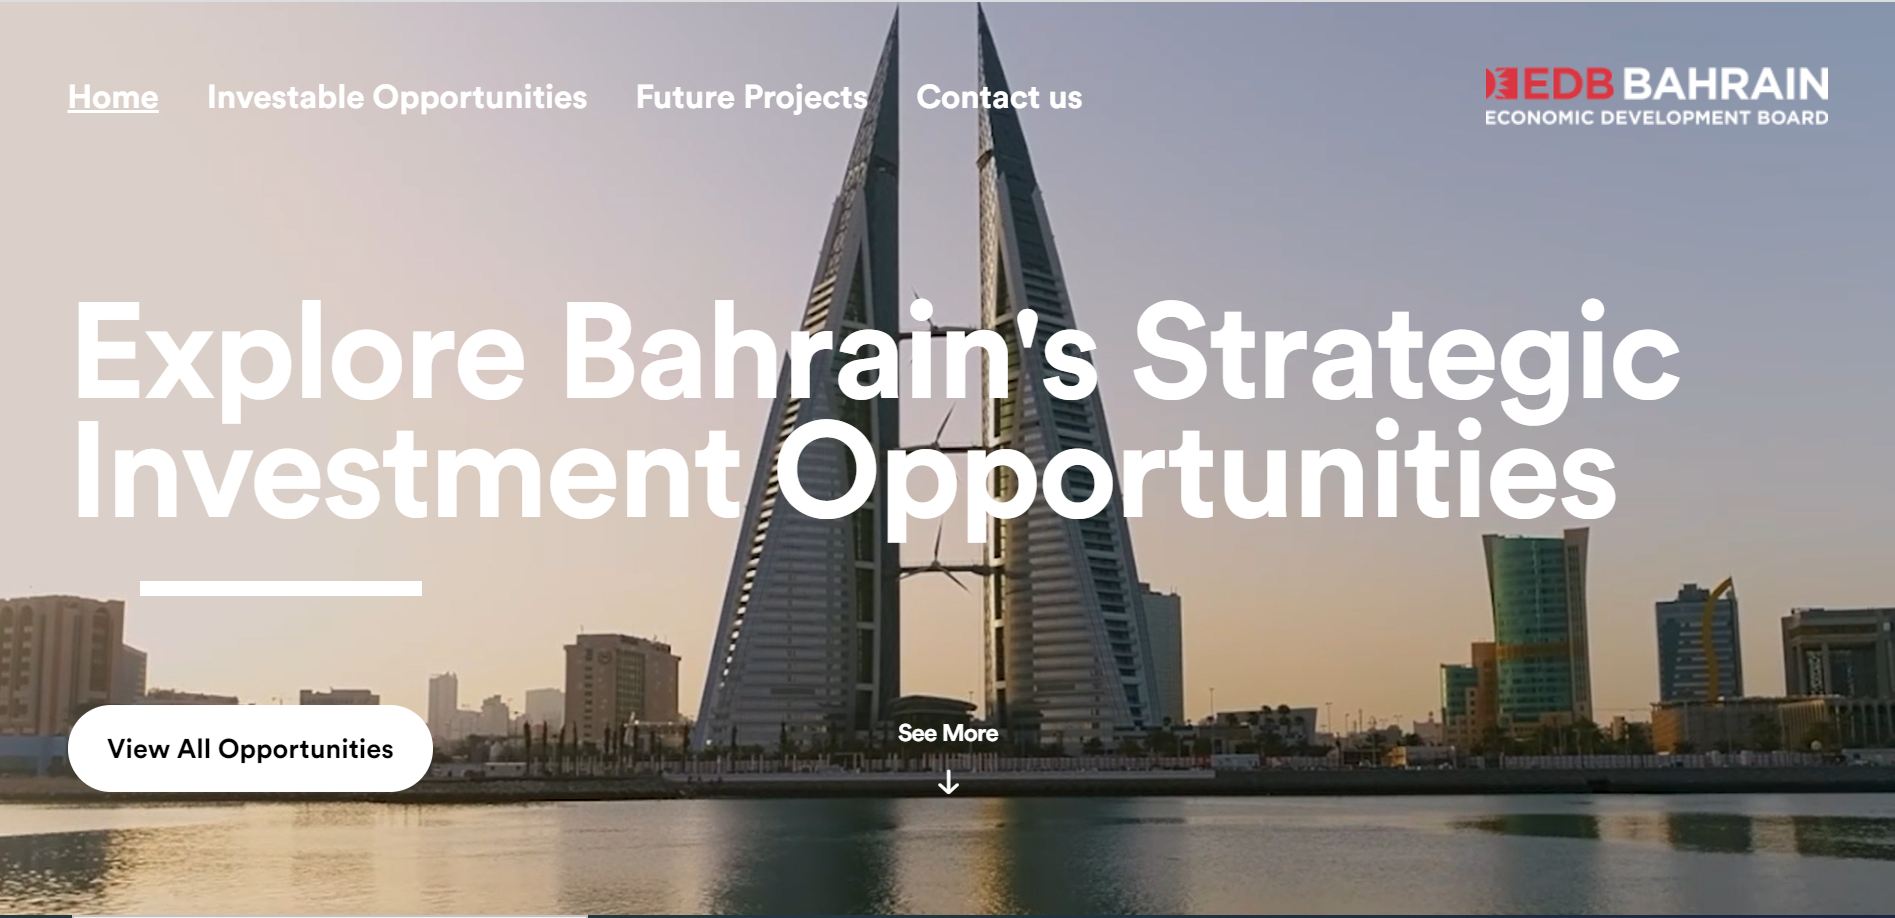 البحرين تطلق منصة استثمارية ستتيح للمستثمرين إمكانية الوصول إلى الفرص الاستثمارية في عدد من المشاريع الاستراتيجية التي تقدر قيمتها بأكثر من 30 مليار دولار أميركي